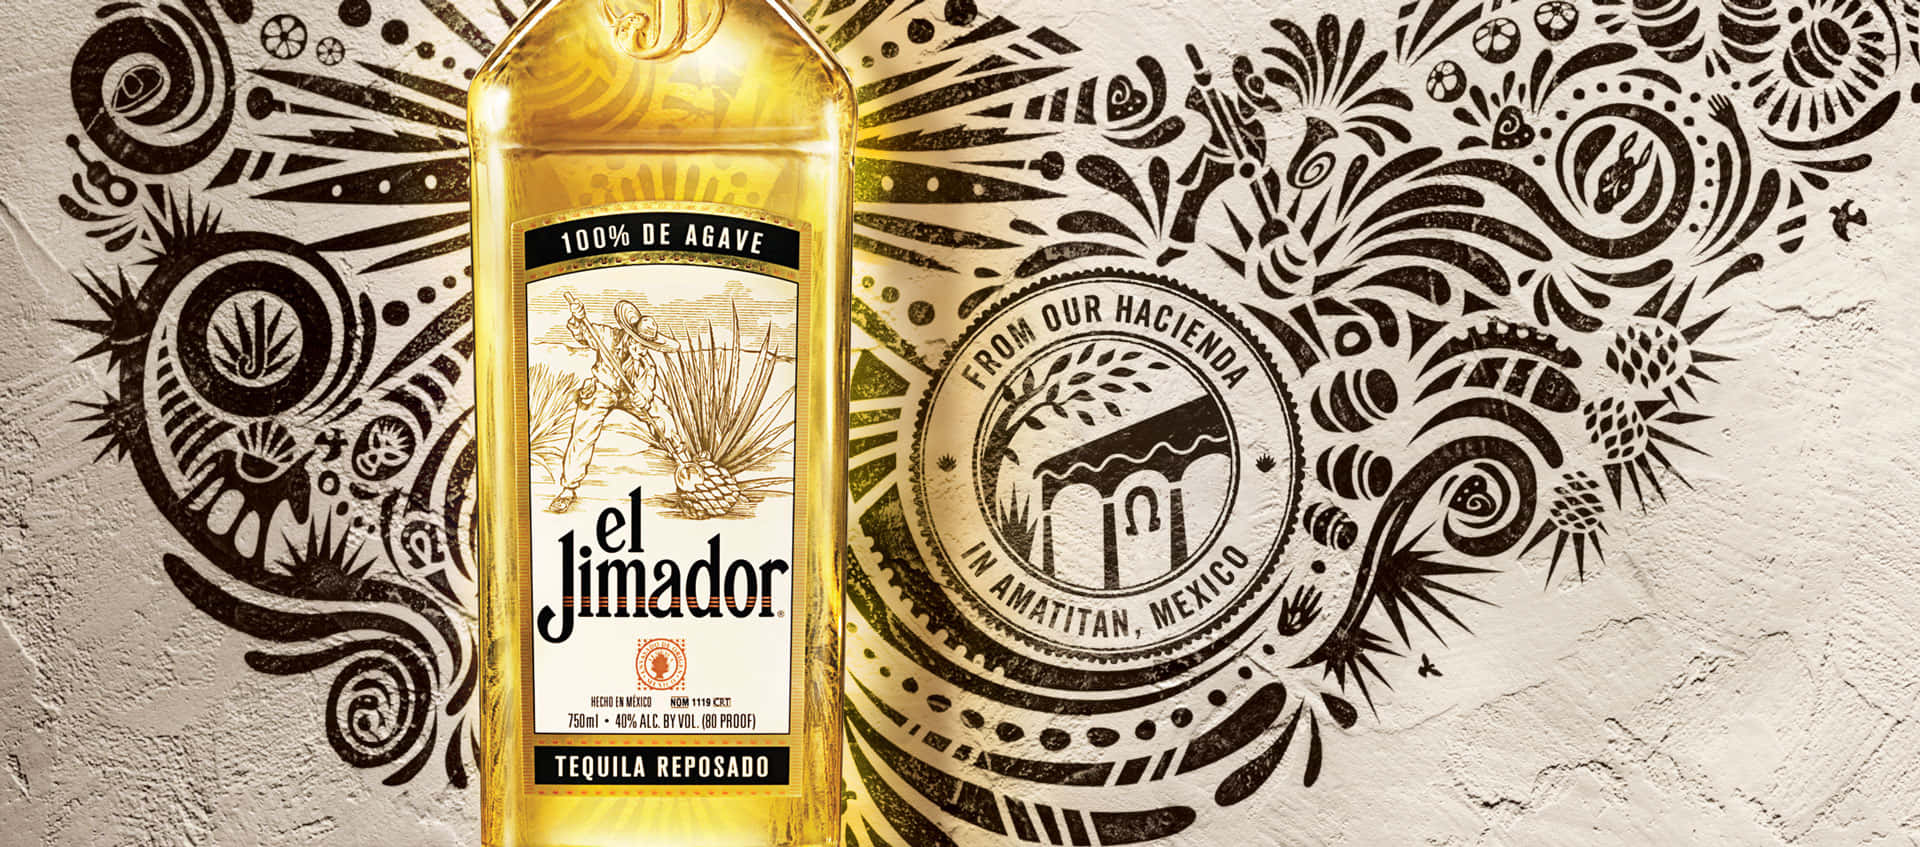 Designgráfico Artístico De Sabor Reposado De Tequila El Jimador. Papel de Parede